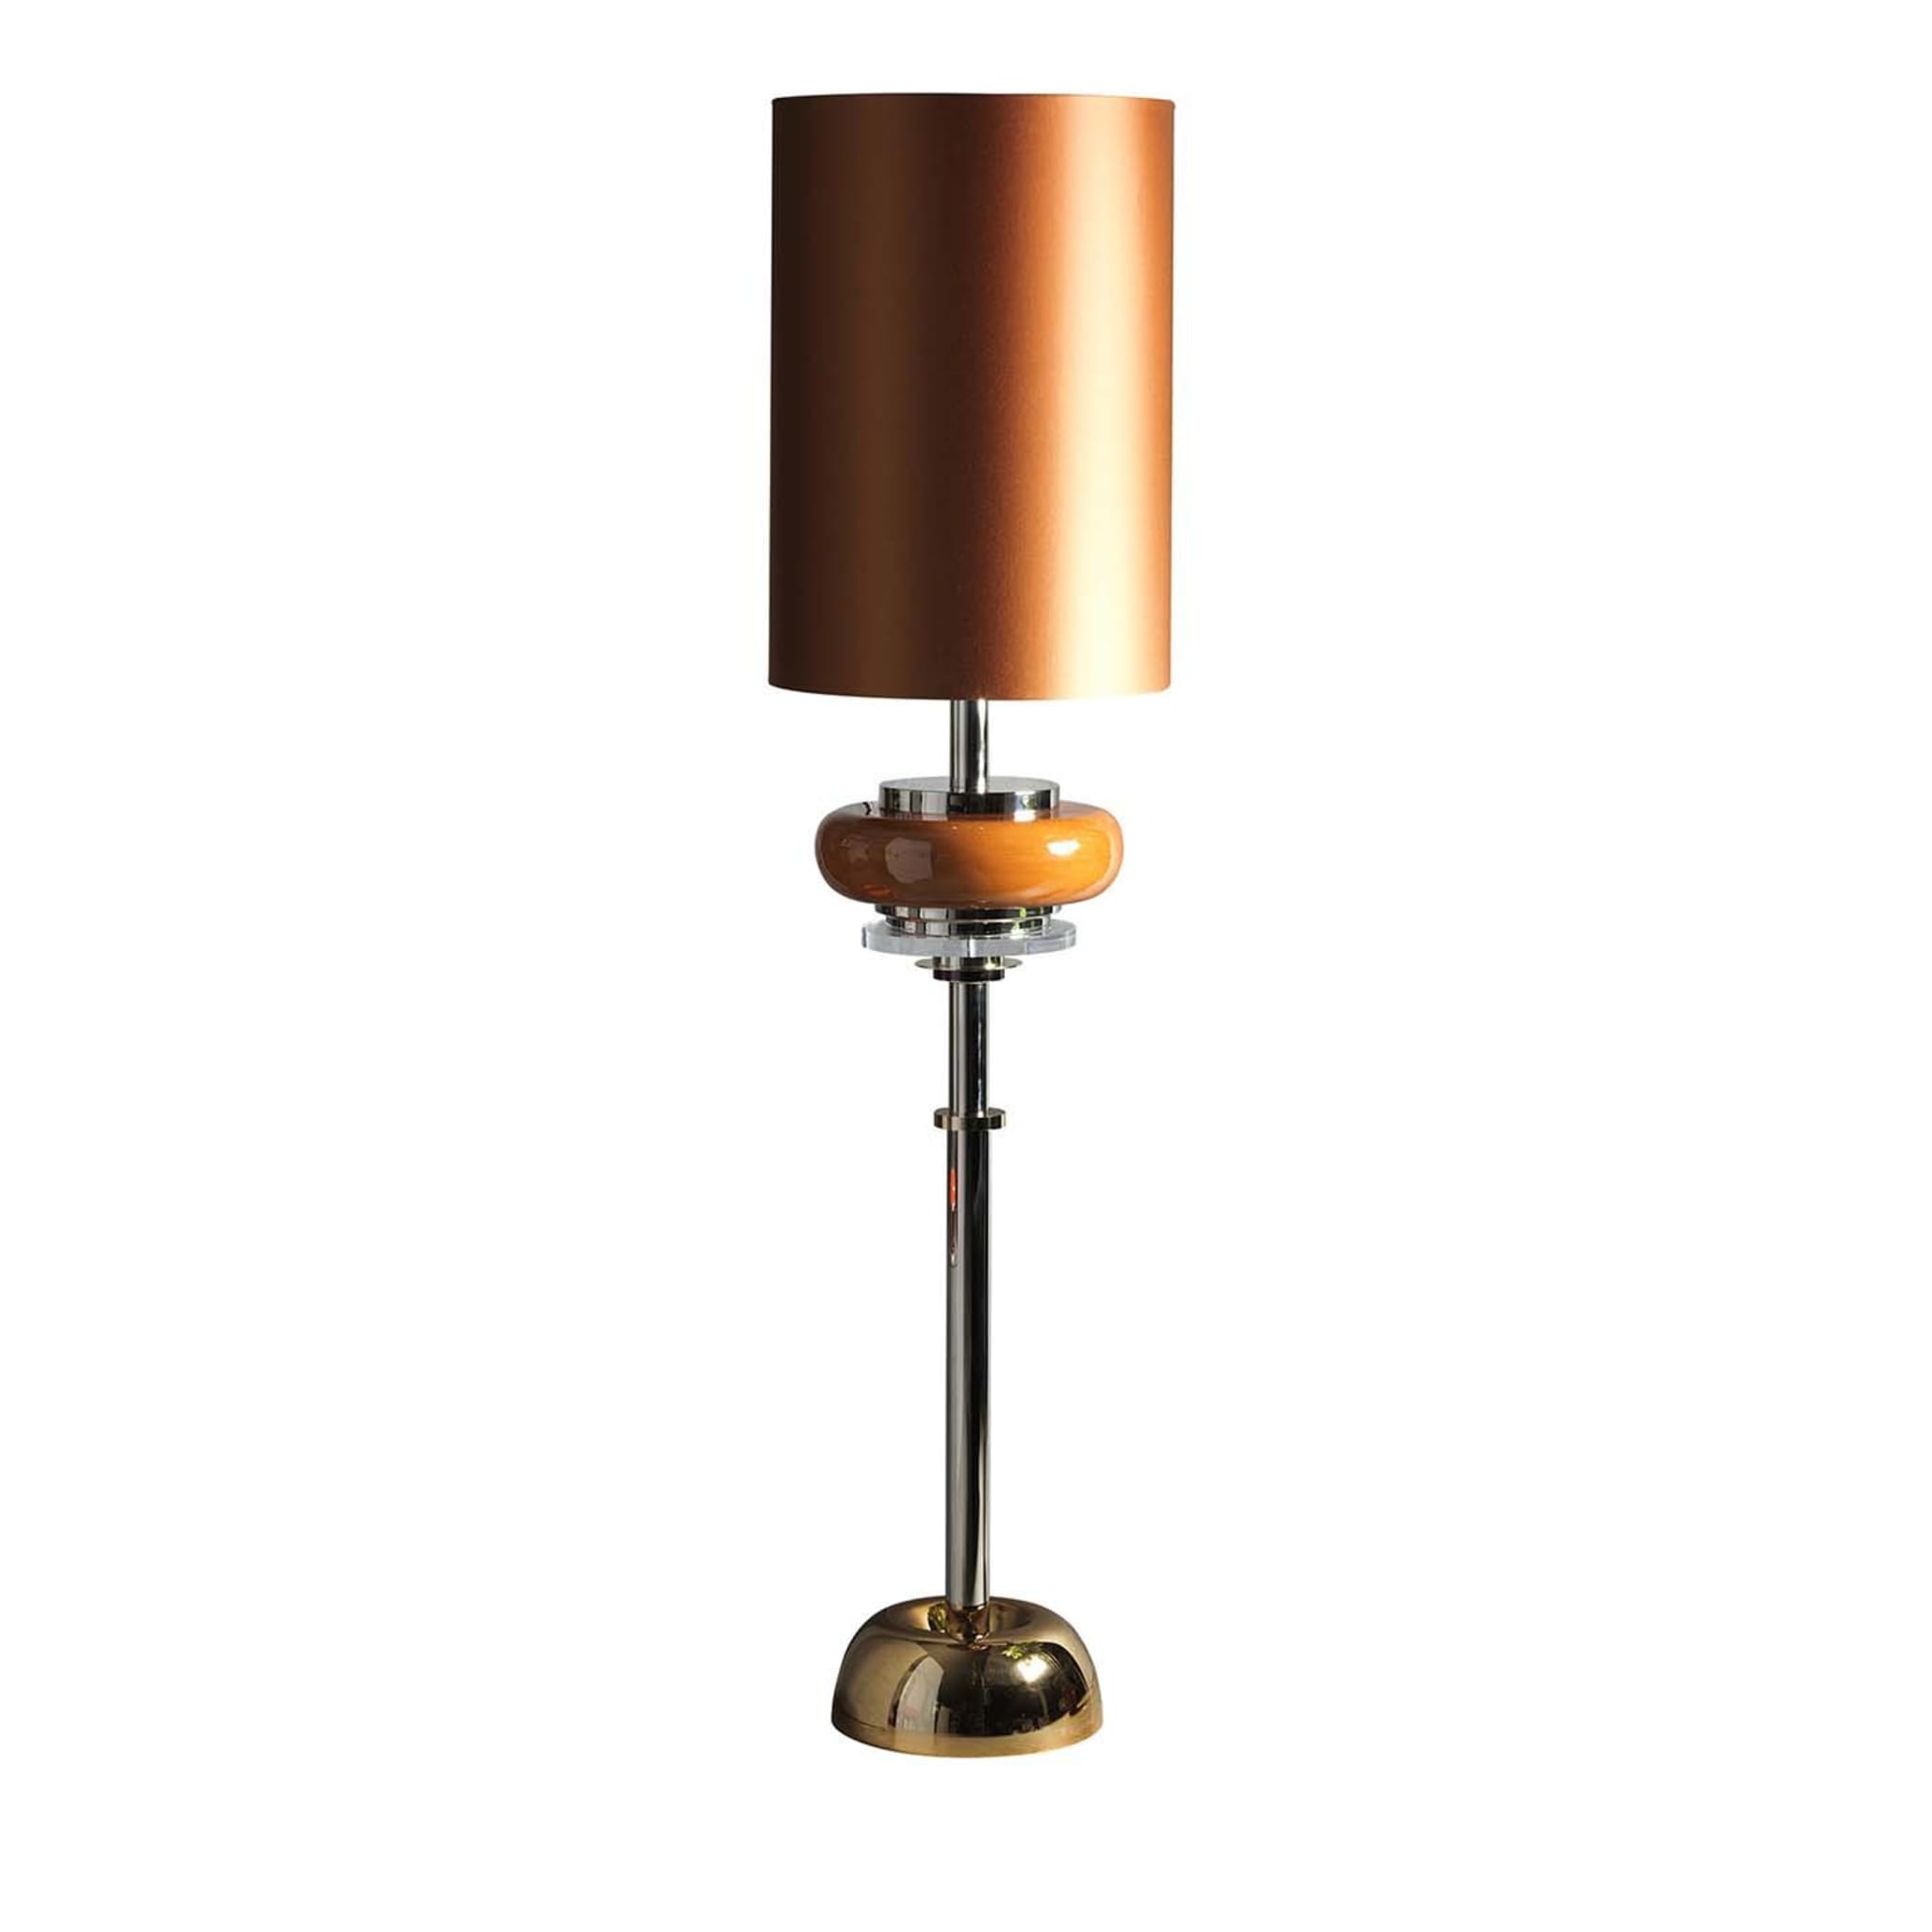 Z631 Golden Brass and Nickel Floor Lamp - Main view